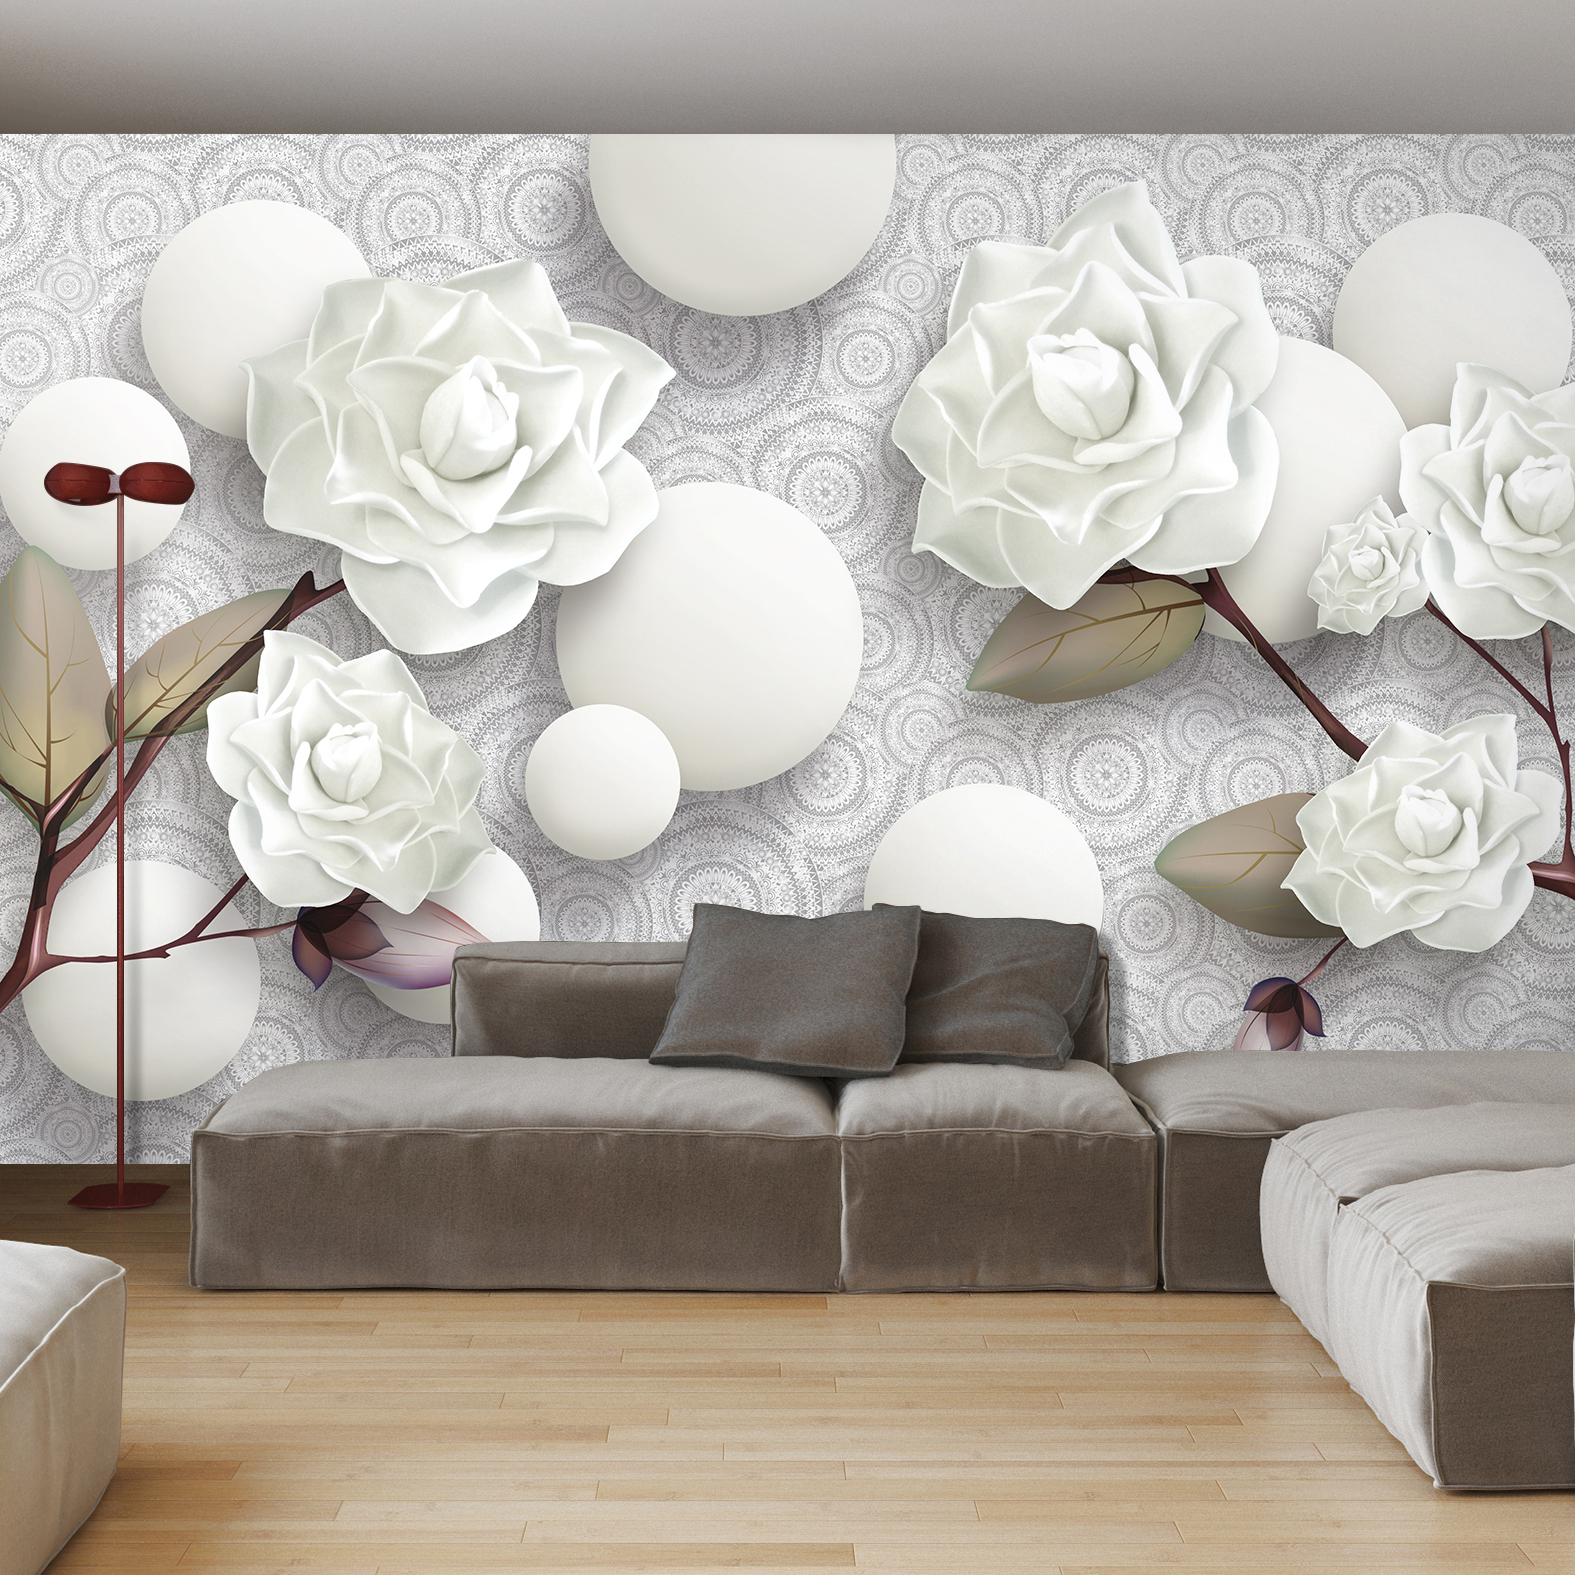 Фотообои Photostena 3D белые розы и шары 4,08 x 2,7 м led xp 5725 6m 230v s белые led прозрачный пр